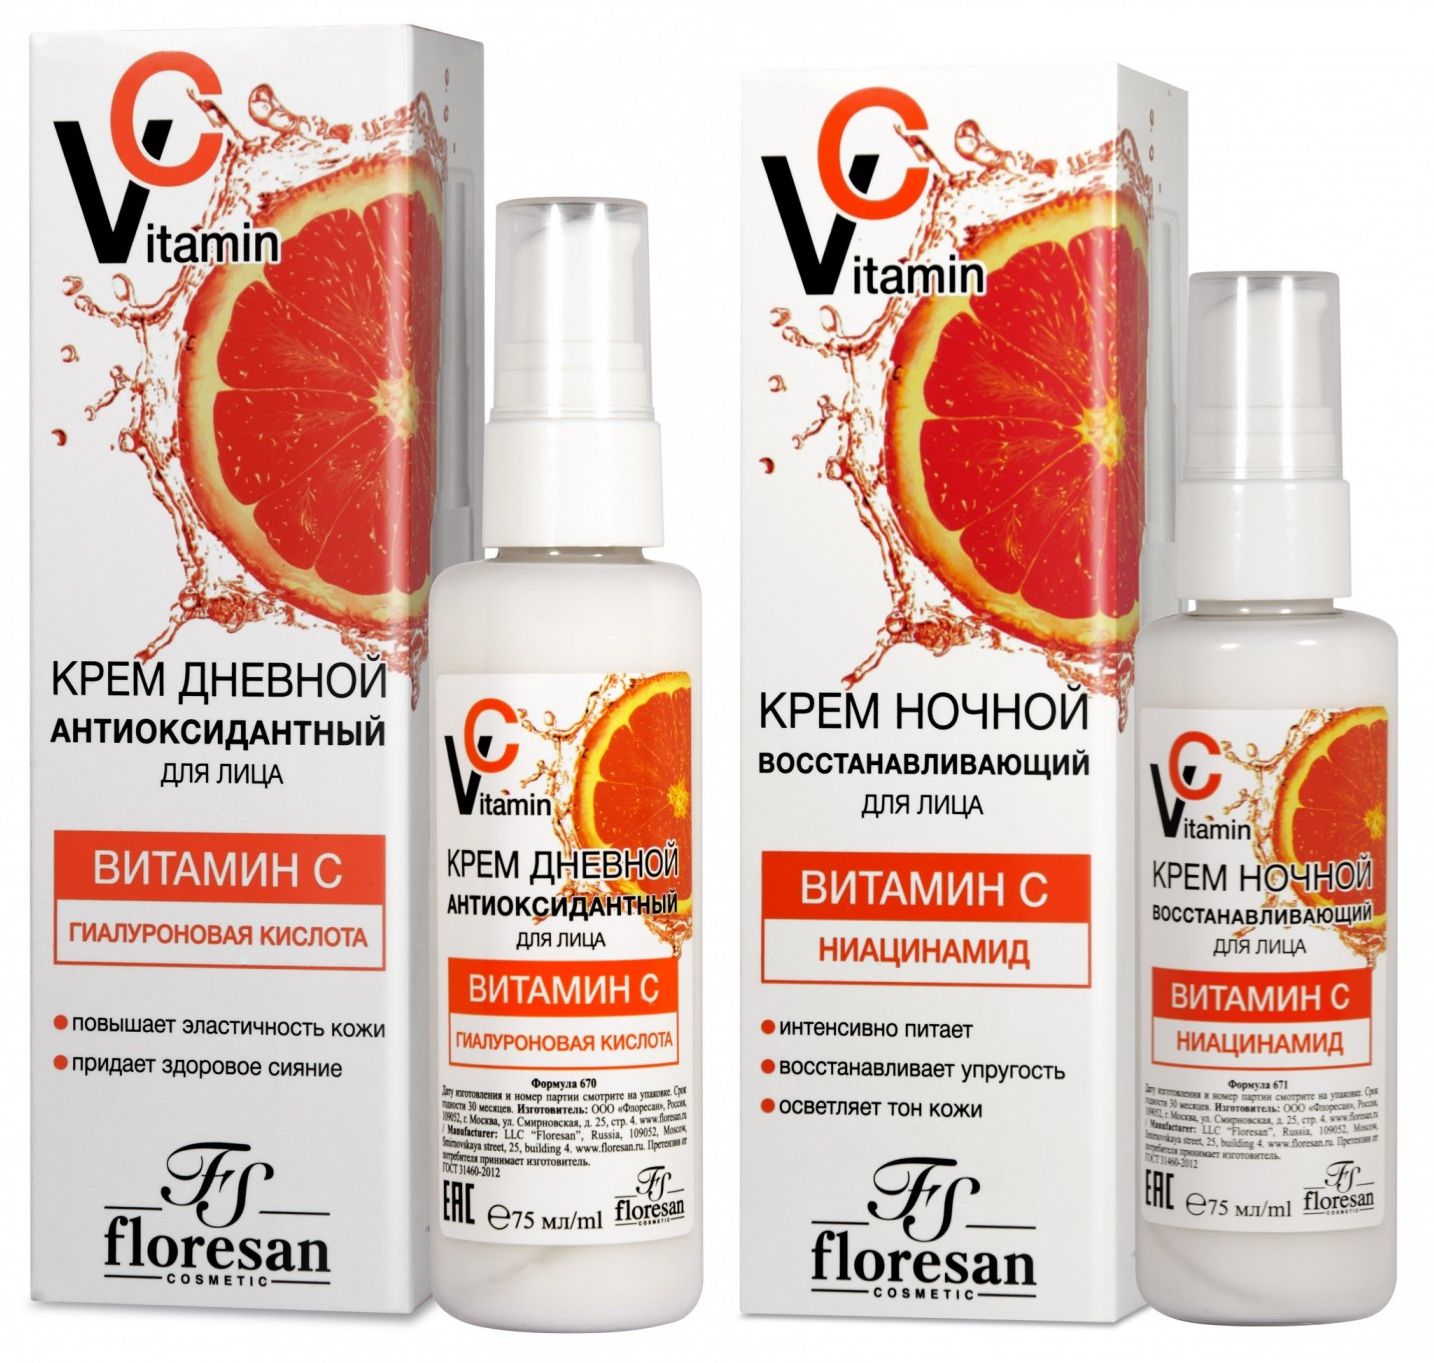 Набор Floresan Vitamin C крем для лица дневной и ночной 75 млх2 шт